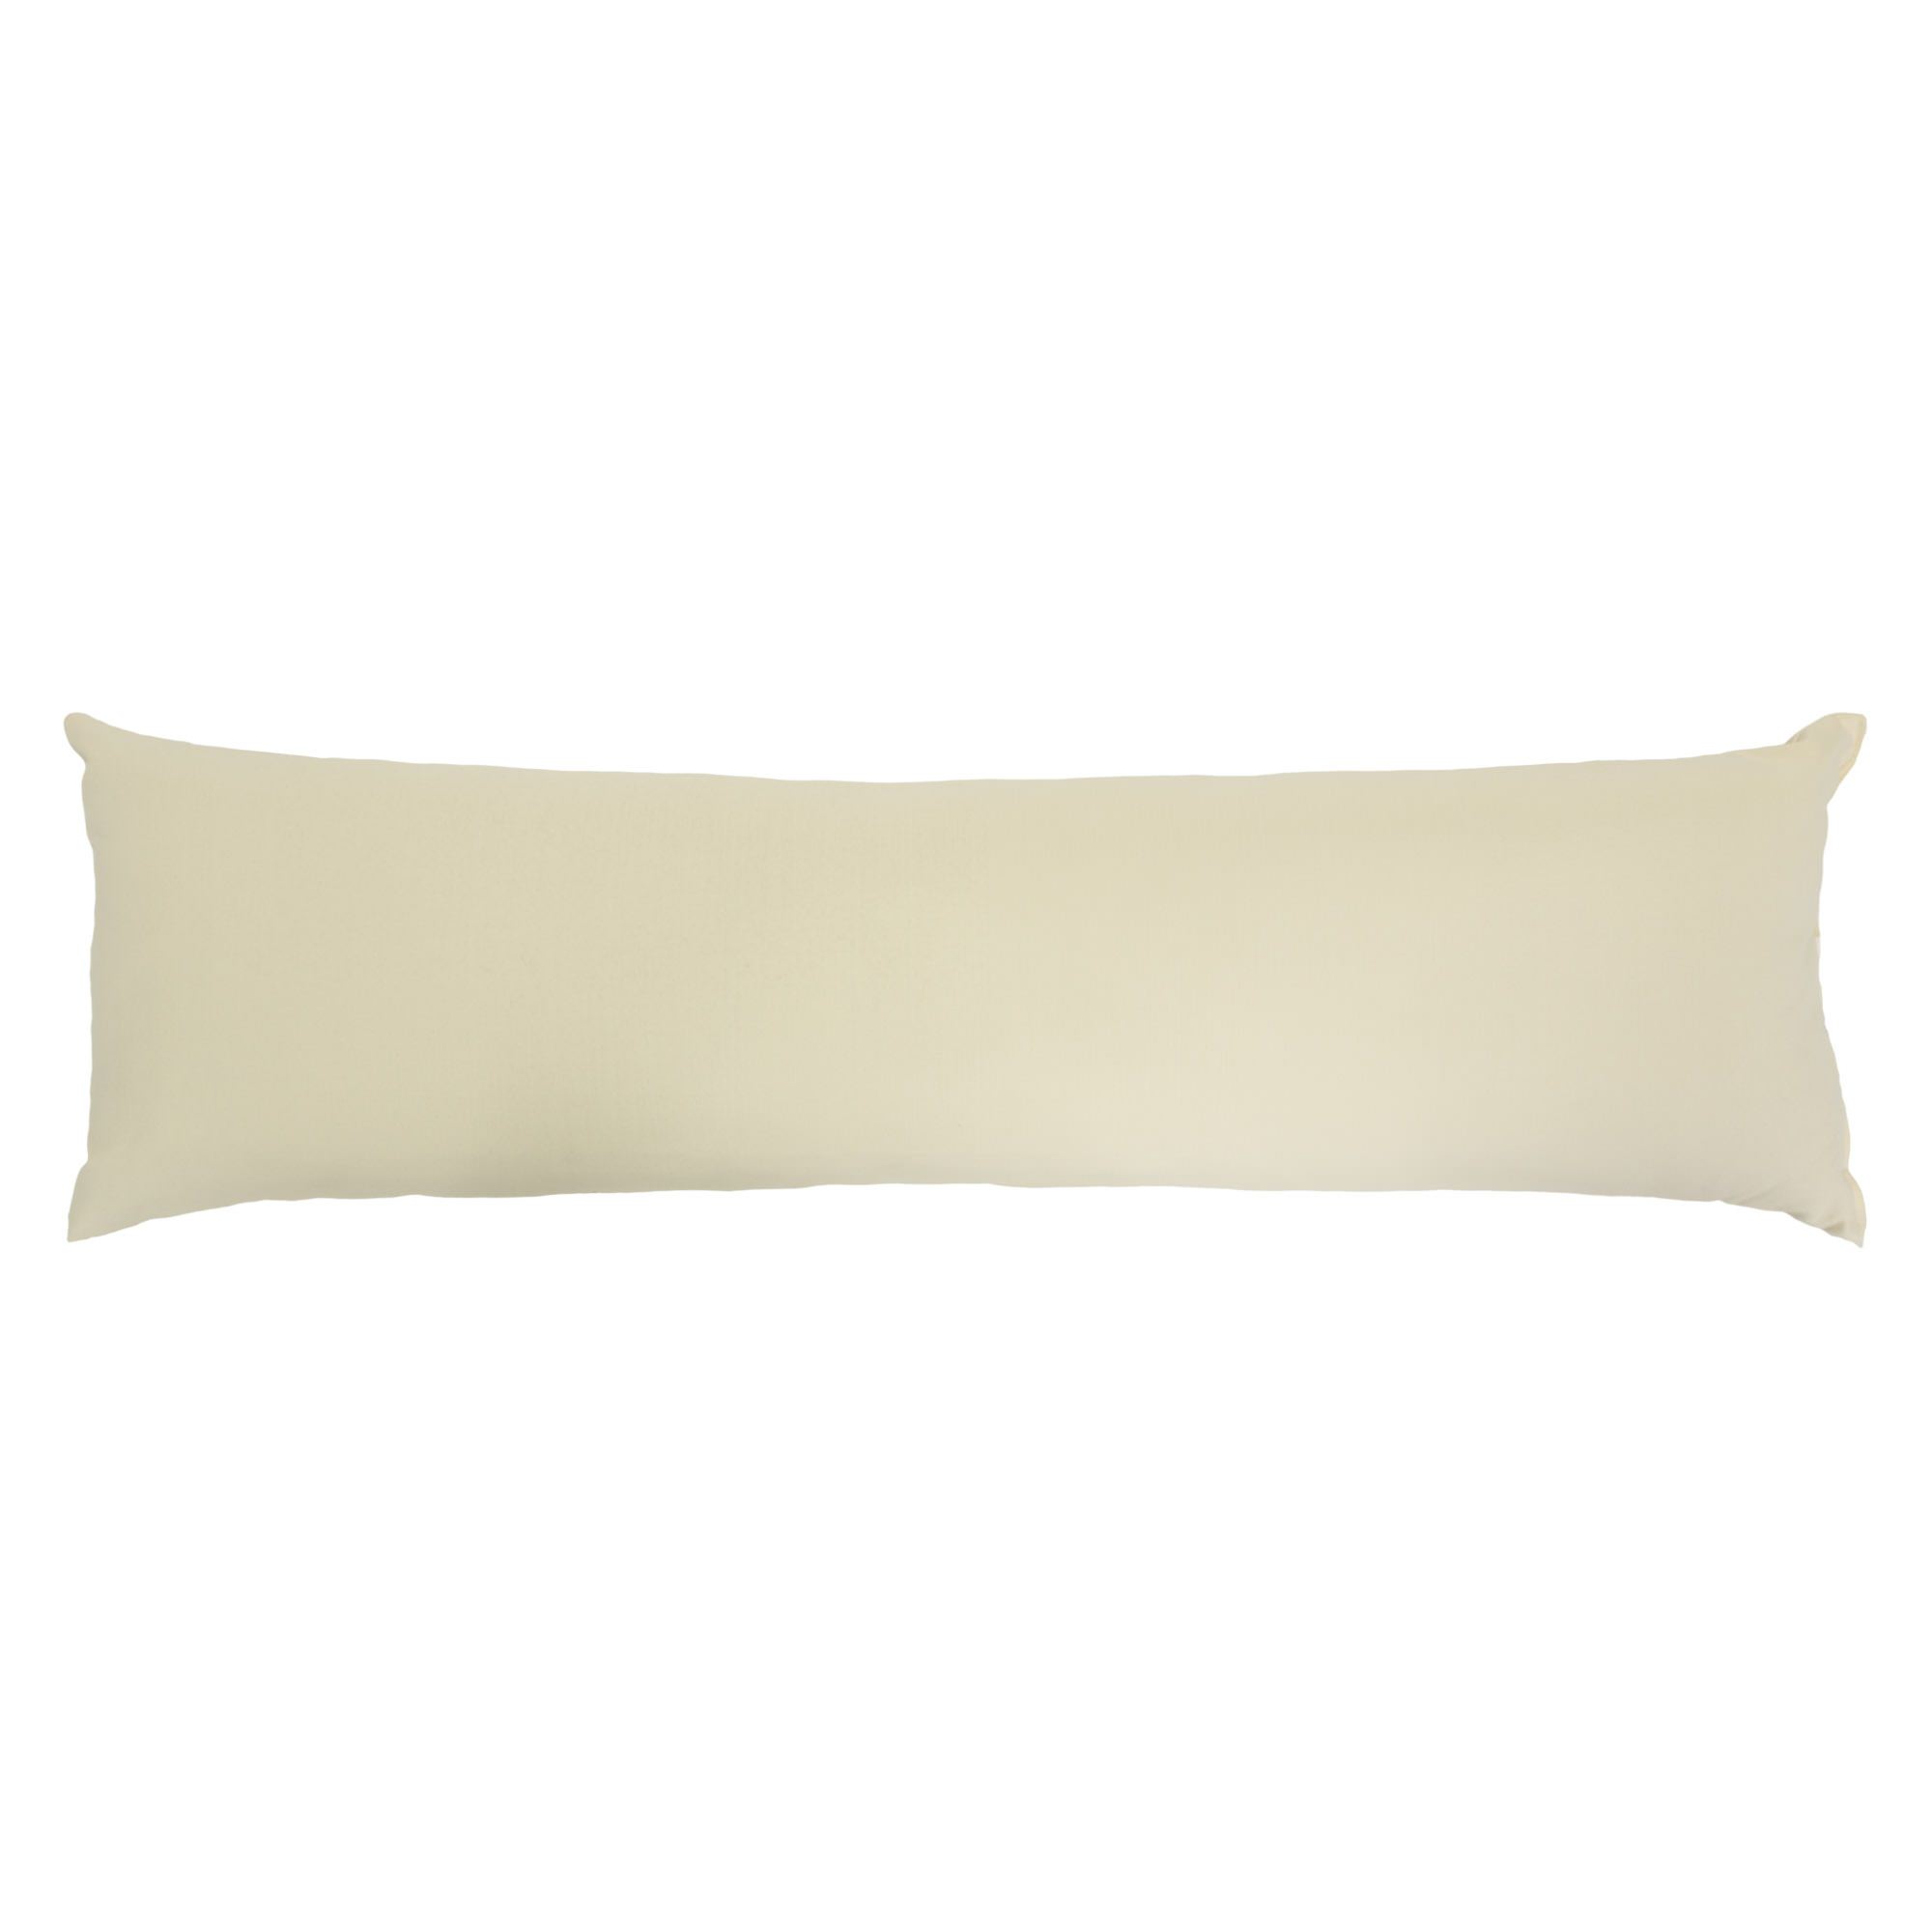 Beige Fluffy Pillows - Fluffy Pillows